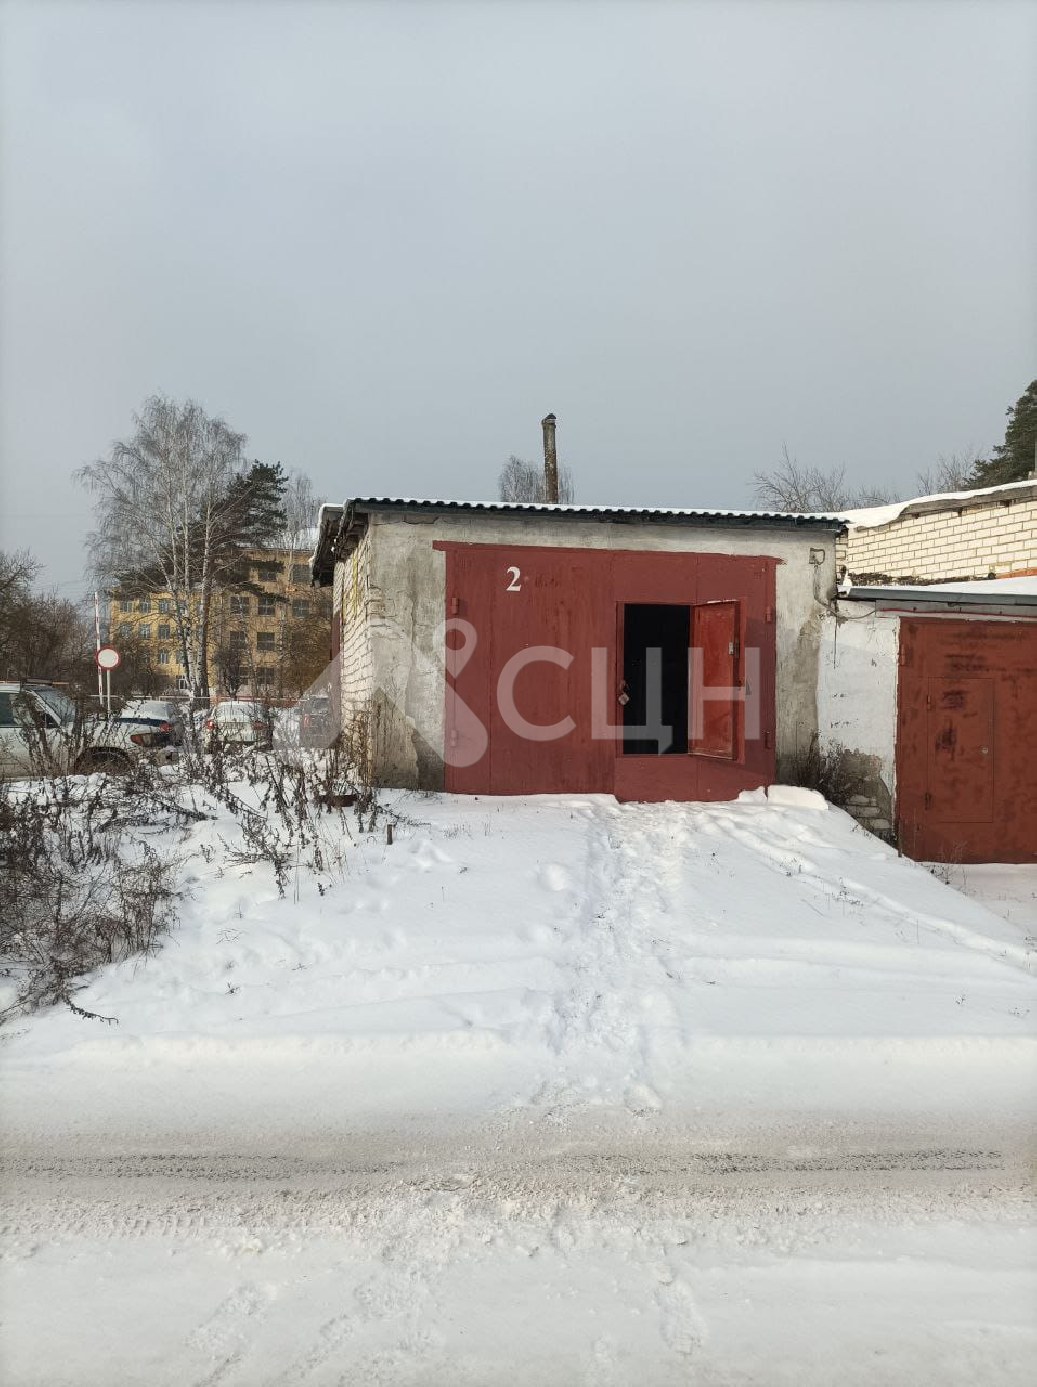 домклик саров недвижимость
: Г. Саров, улица Зернова, ГСК 3, блок 1, 1-комн гараж, , продажа.